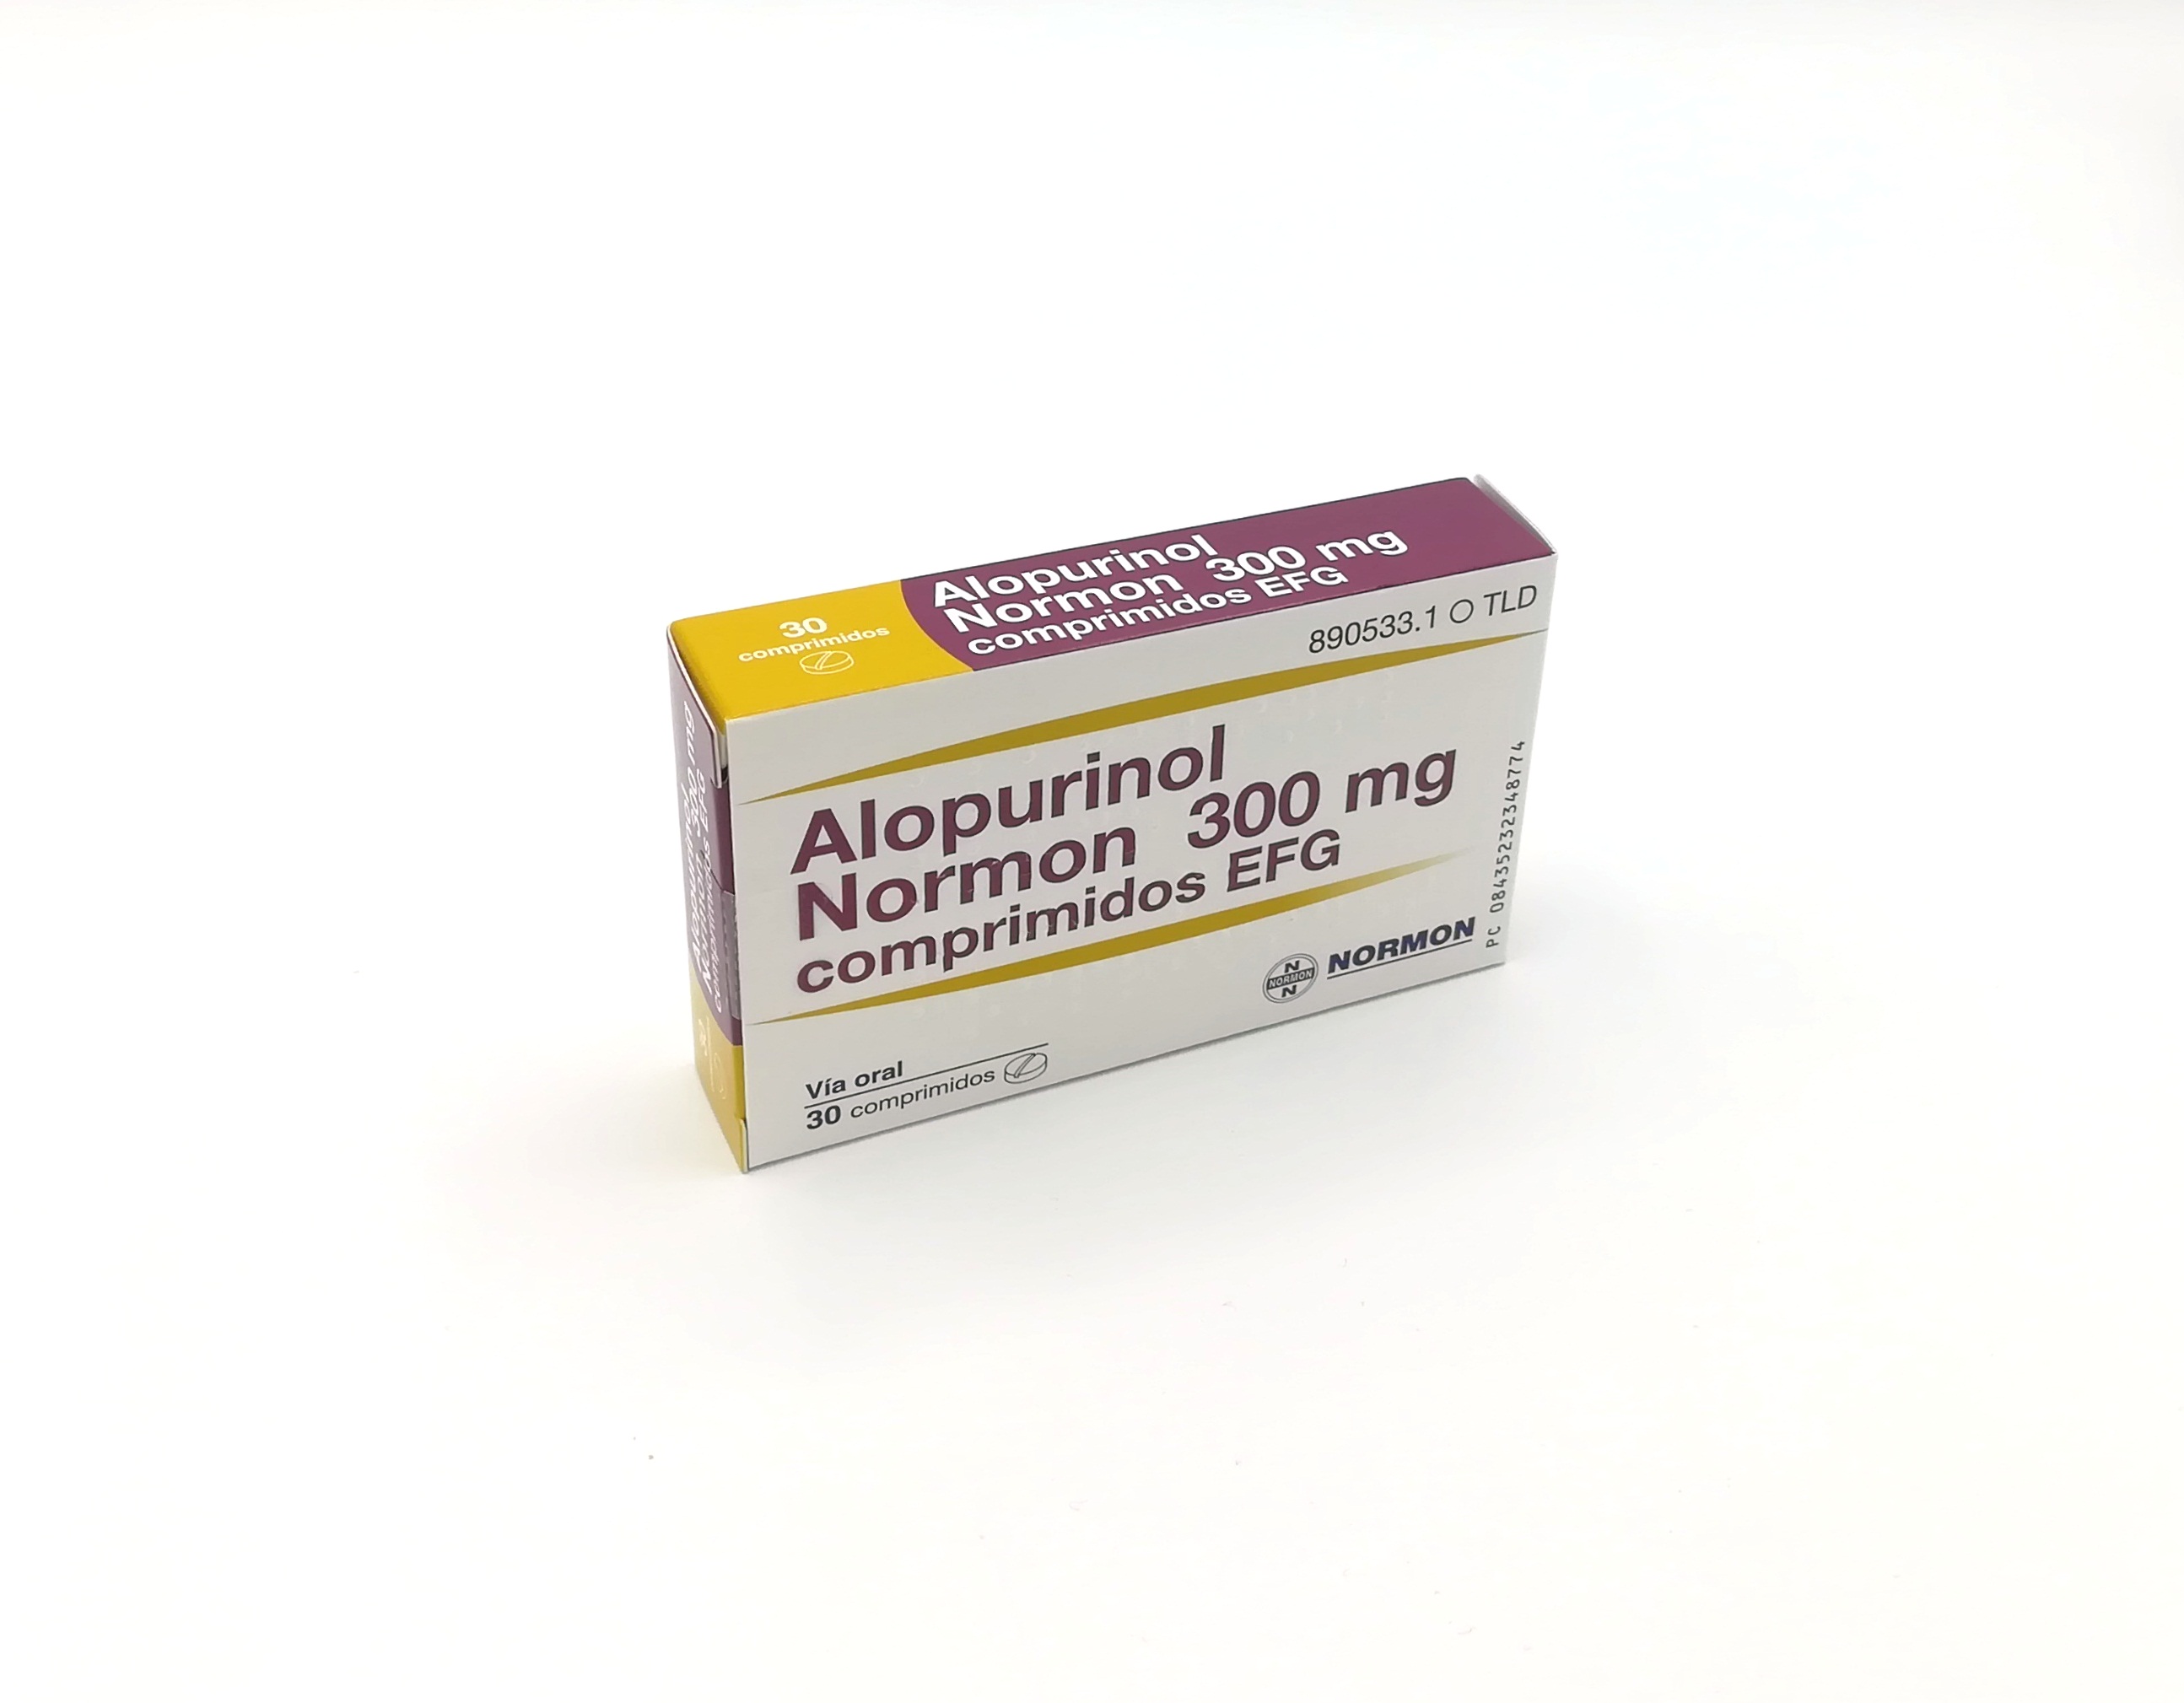 ALOPURINOL NORMON EFG 300 mg 500 COMPRIMIDOS